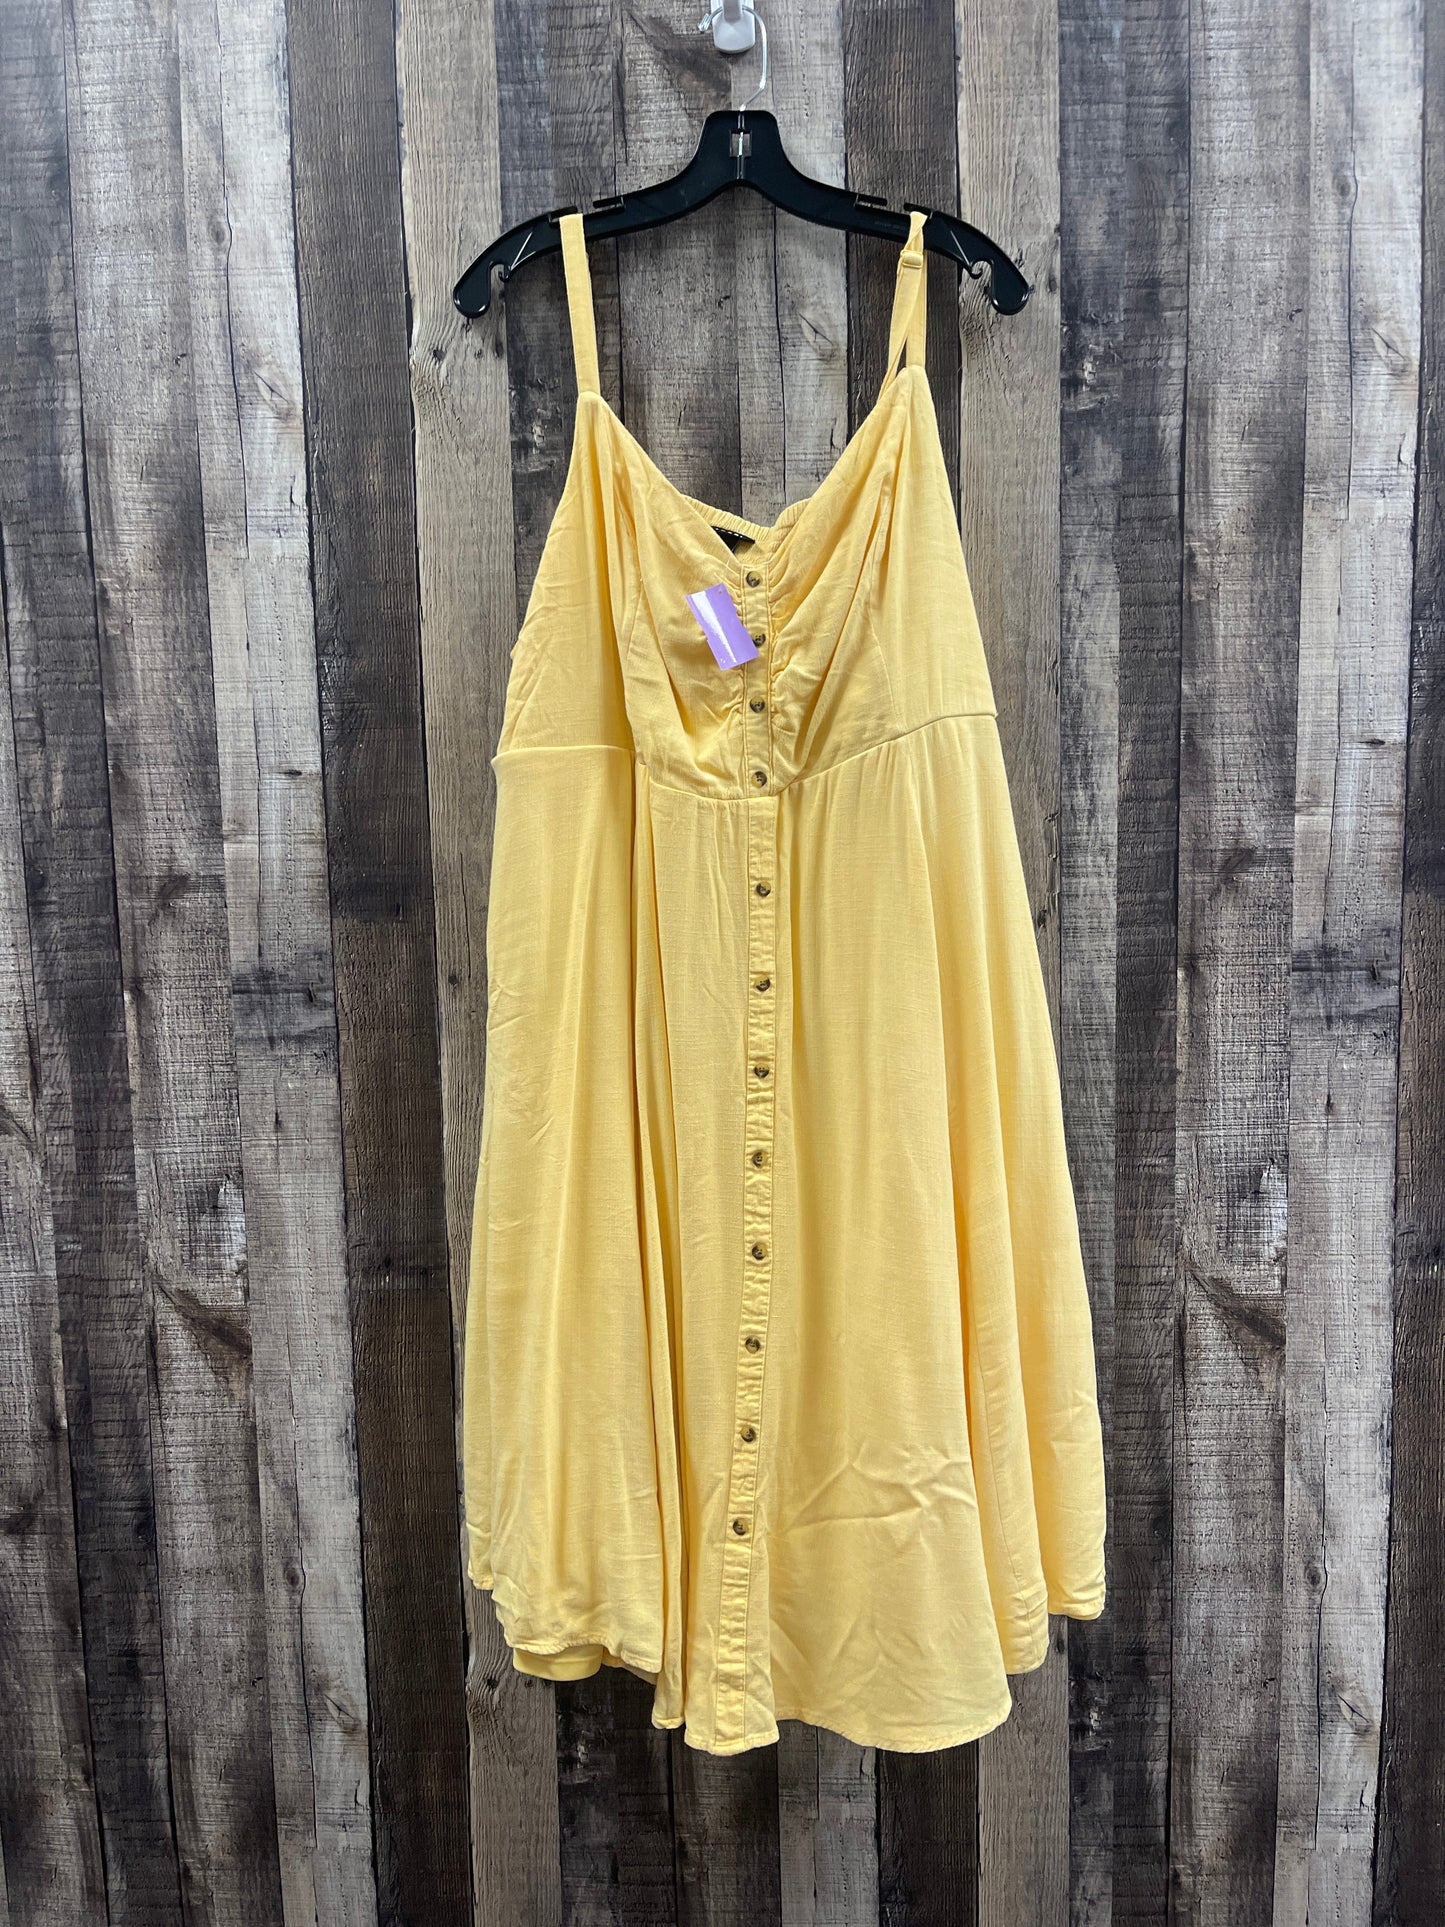 Yellow Dress Casual Midi Torrid, Size 4x